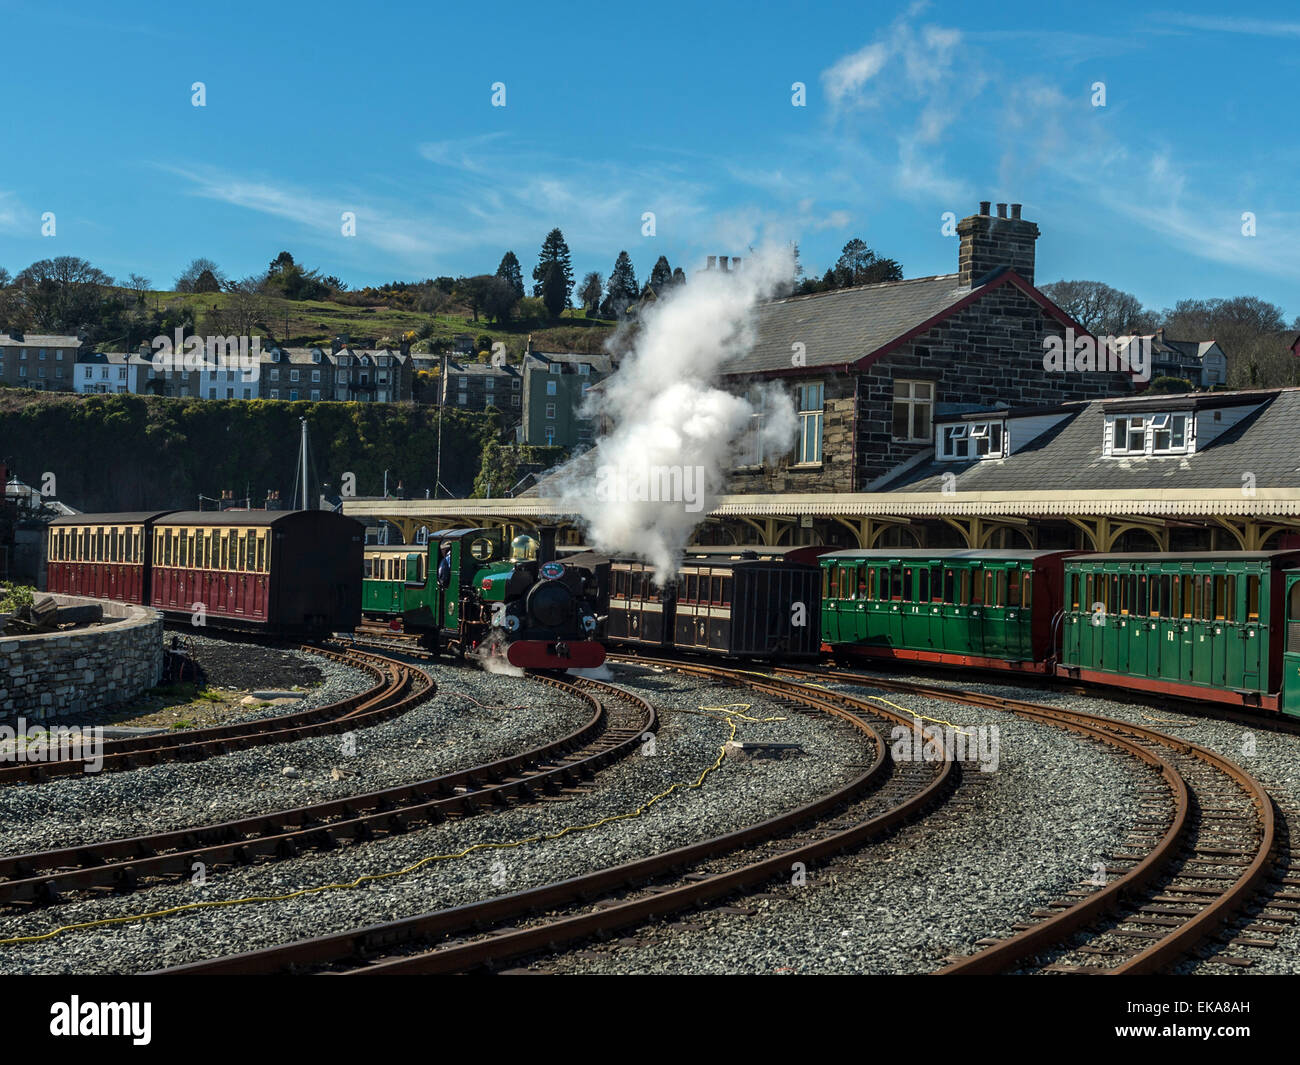 Blanche, ein Sattel-Tenderlok tender kann sich austoben am Bahnhof von Porthmadog, Wales. Stockfoto